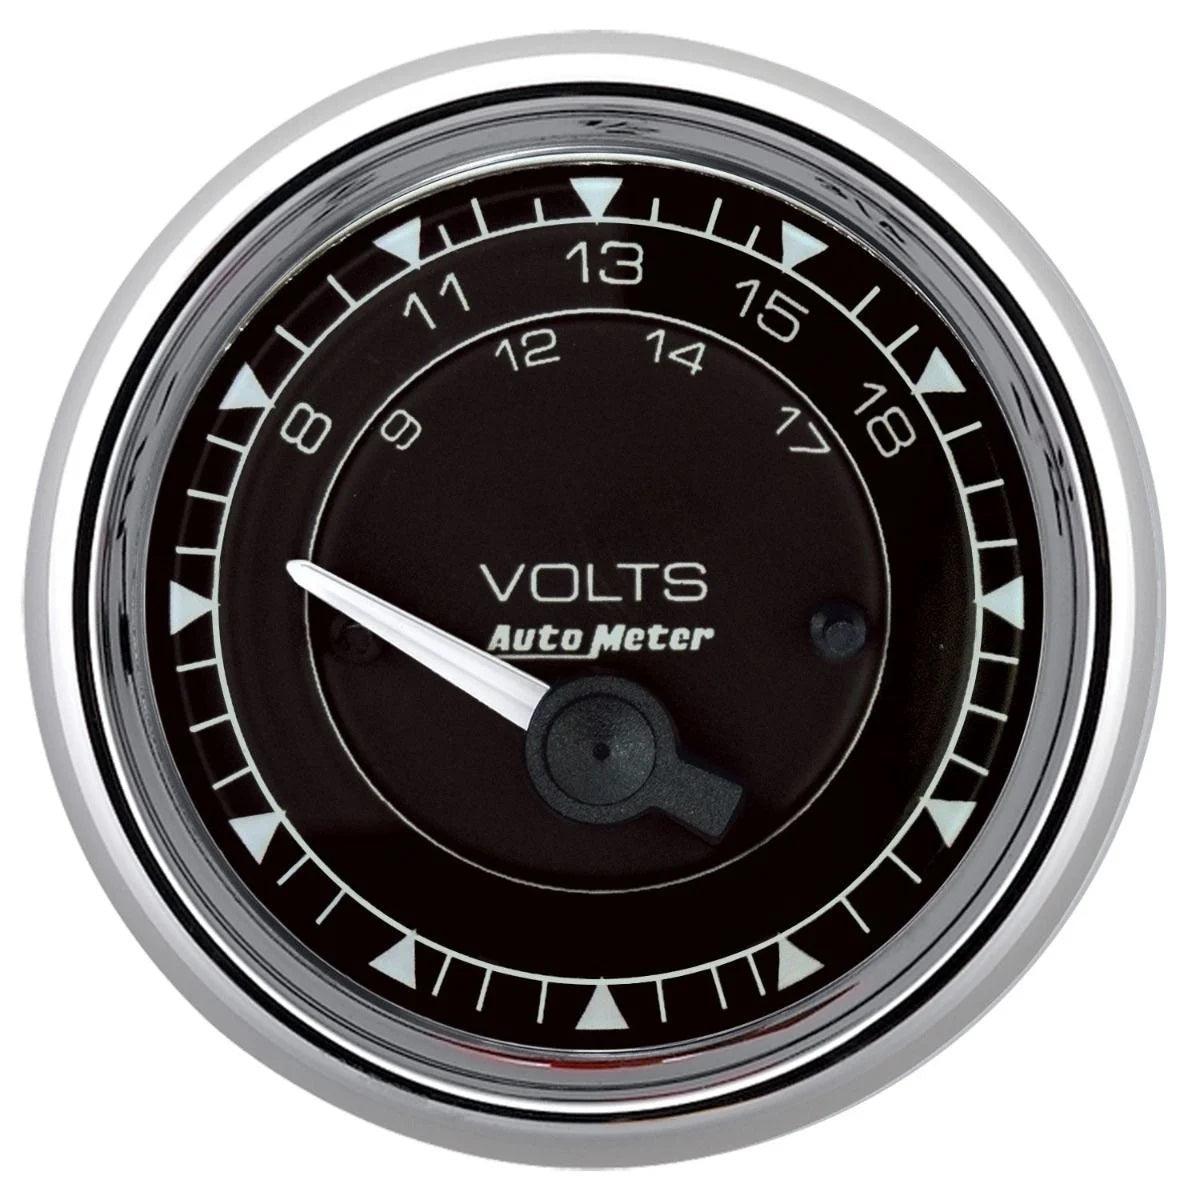 2/16 Chrono Chrome Gauge Voltmeter 18-Volt - Burlile Performance Products